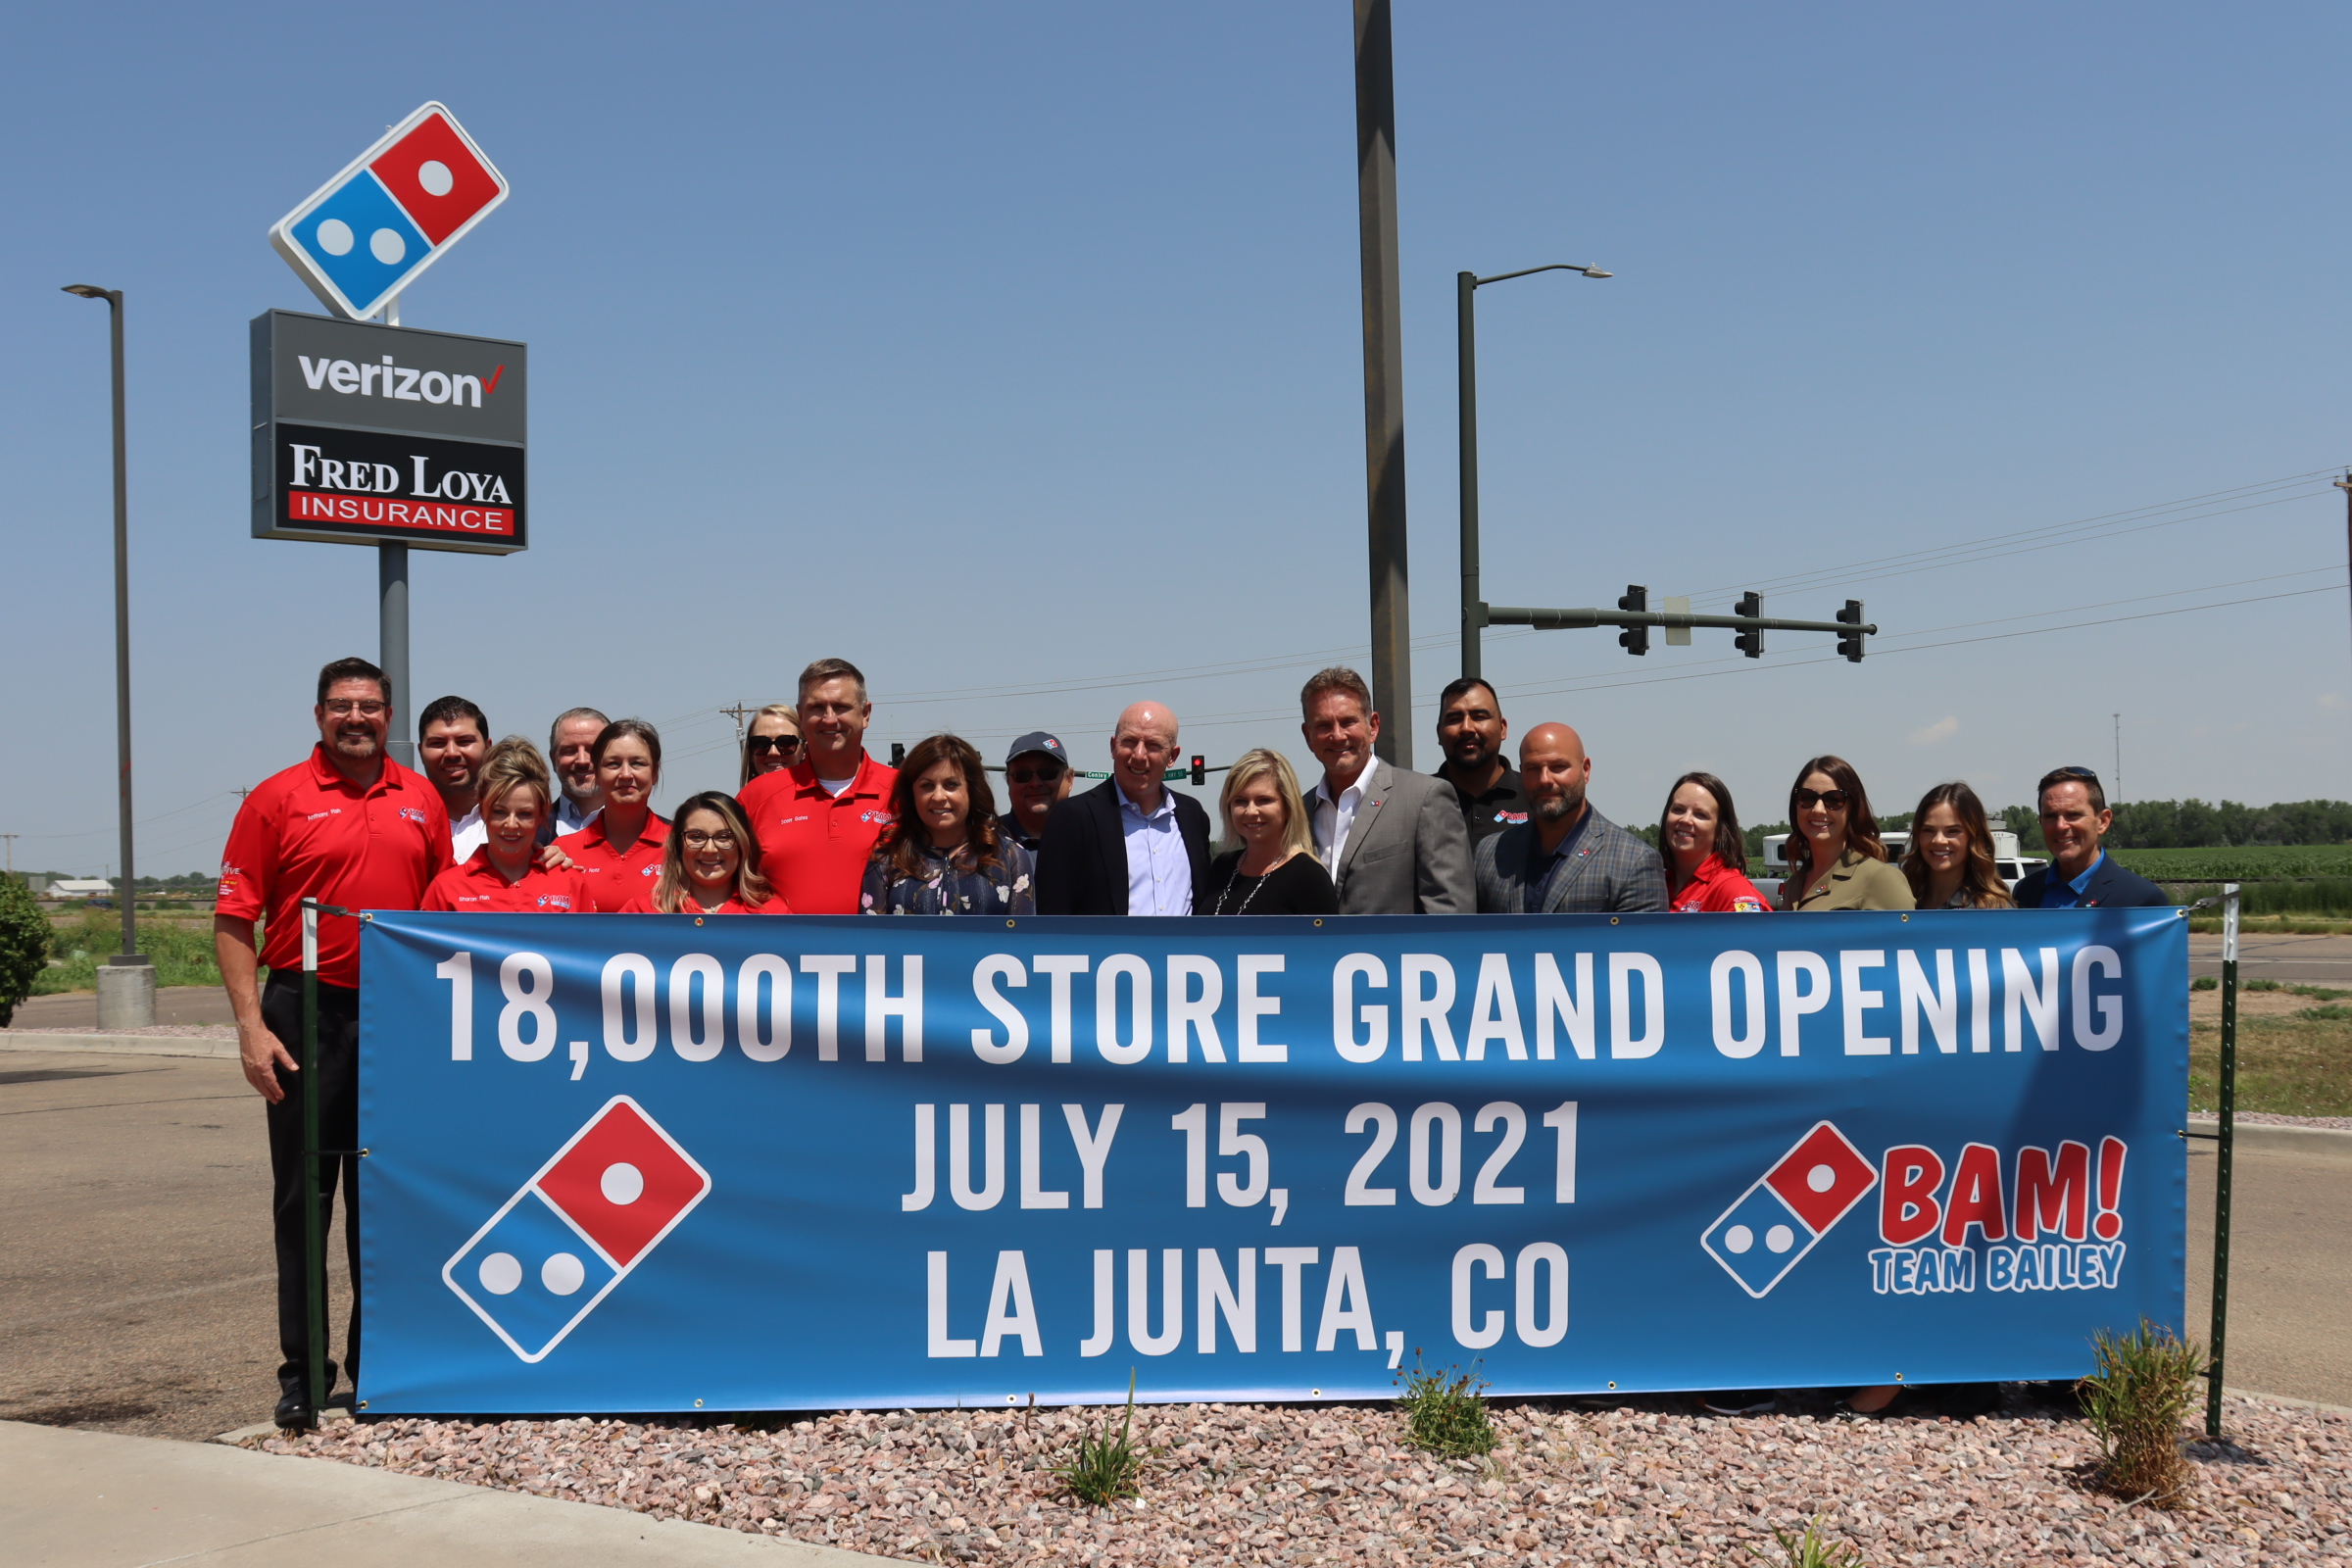 Domino's Pizza La Junta Grand Opening 18000th Store SECO News seconews.org